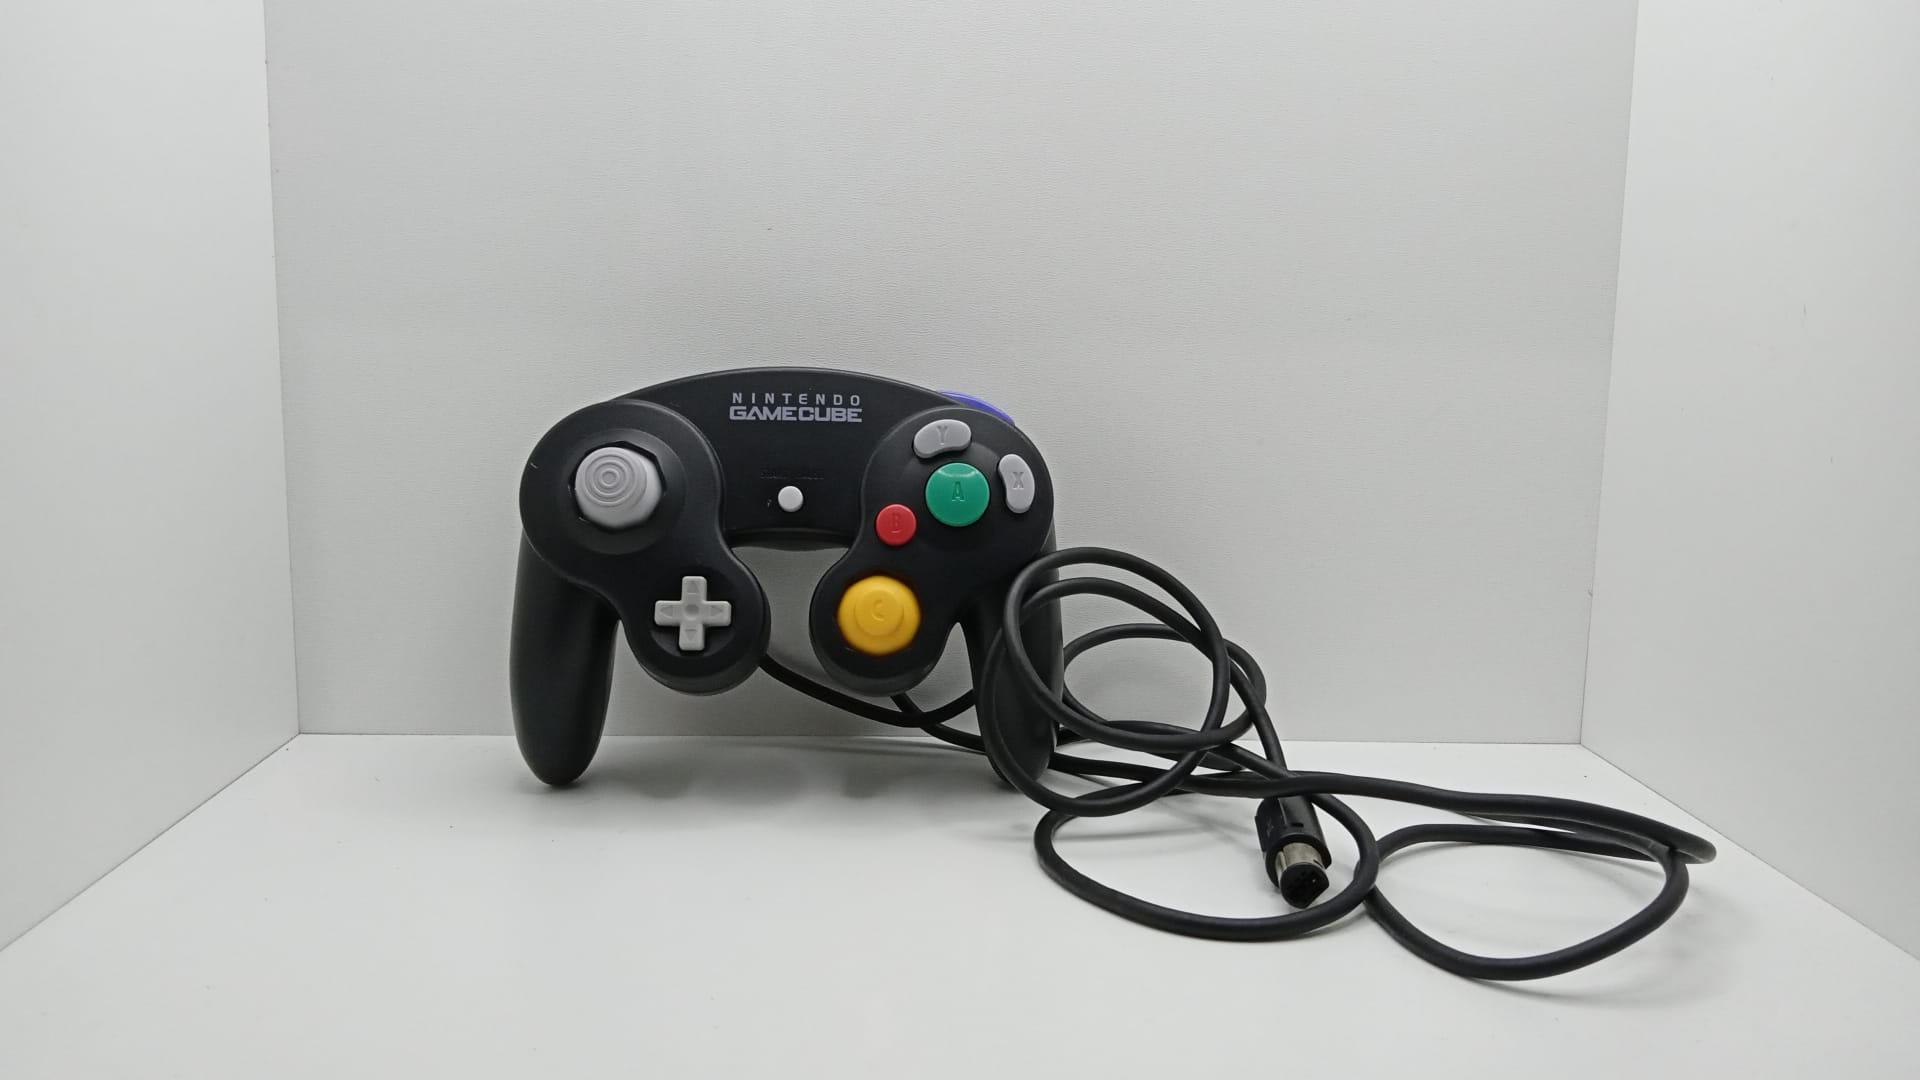 Ovladač Nintendo GameCube - Nintendo® - Black - vyčištěno a zrenovováno